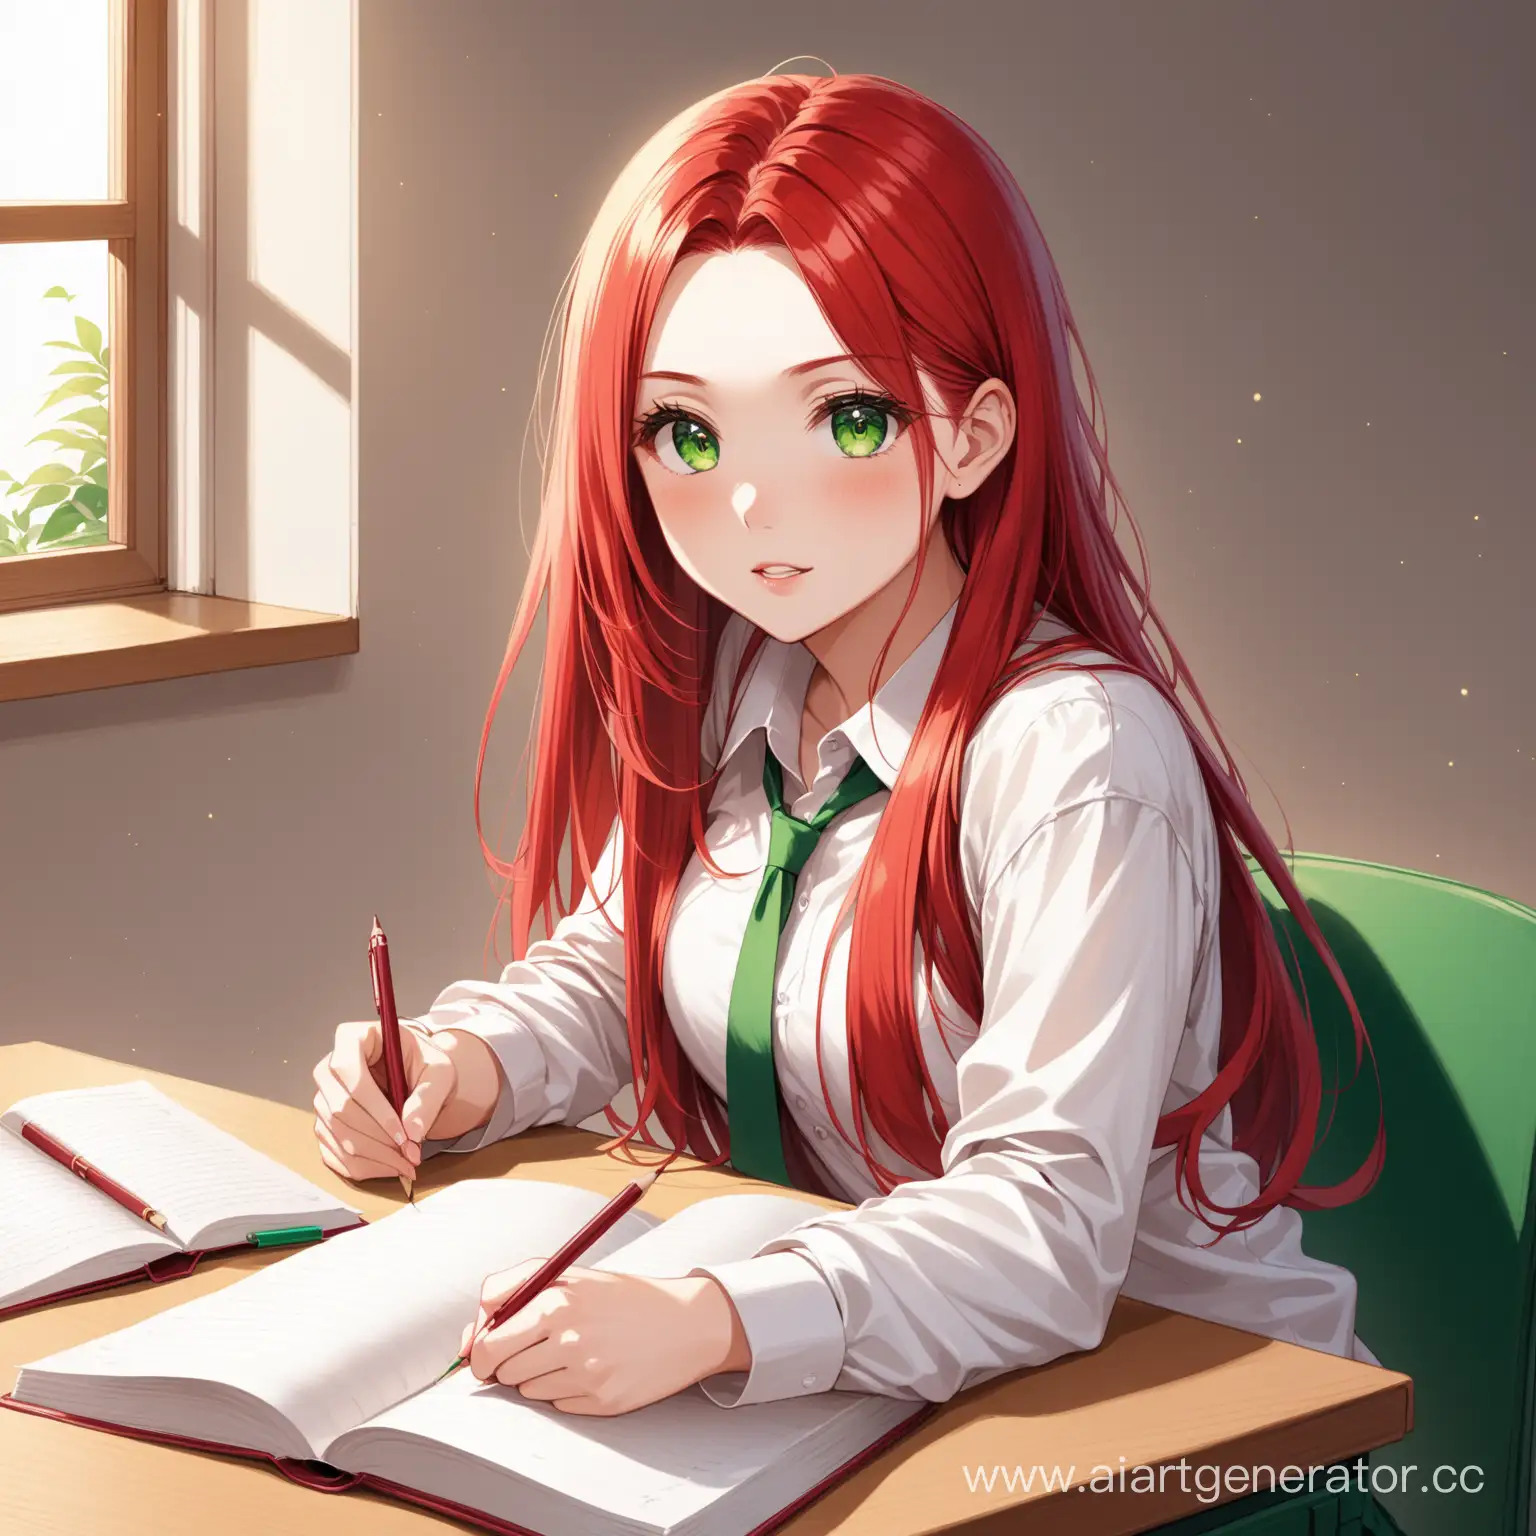 мотивация к учебе, девушка с длинными рыжими волосами и зелеными глазами 